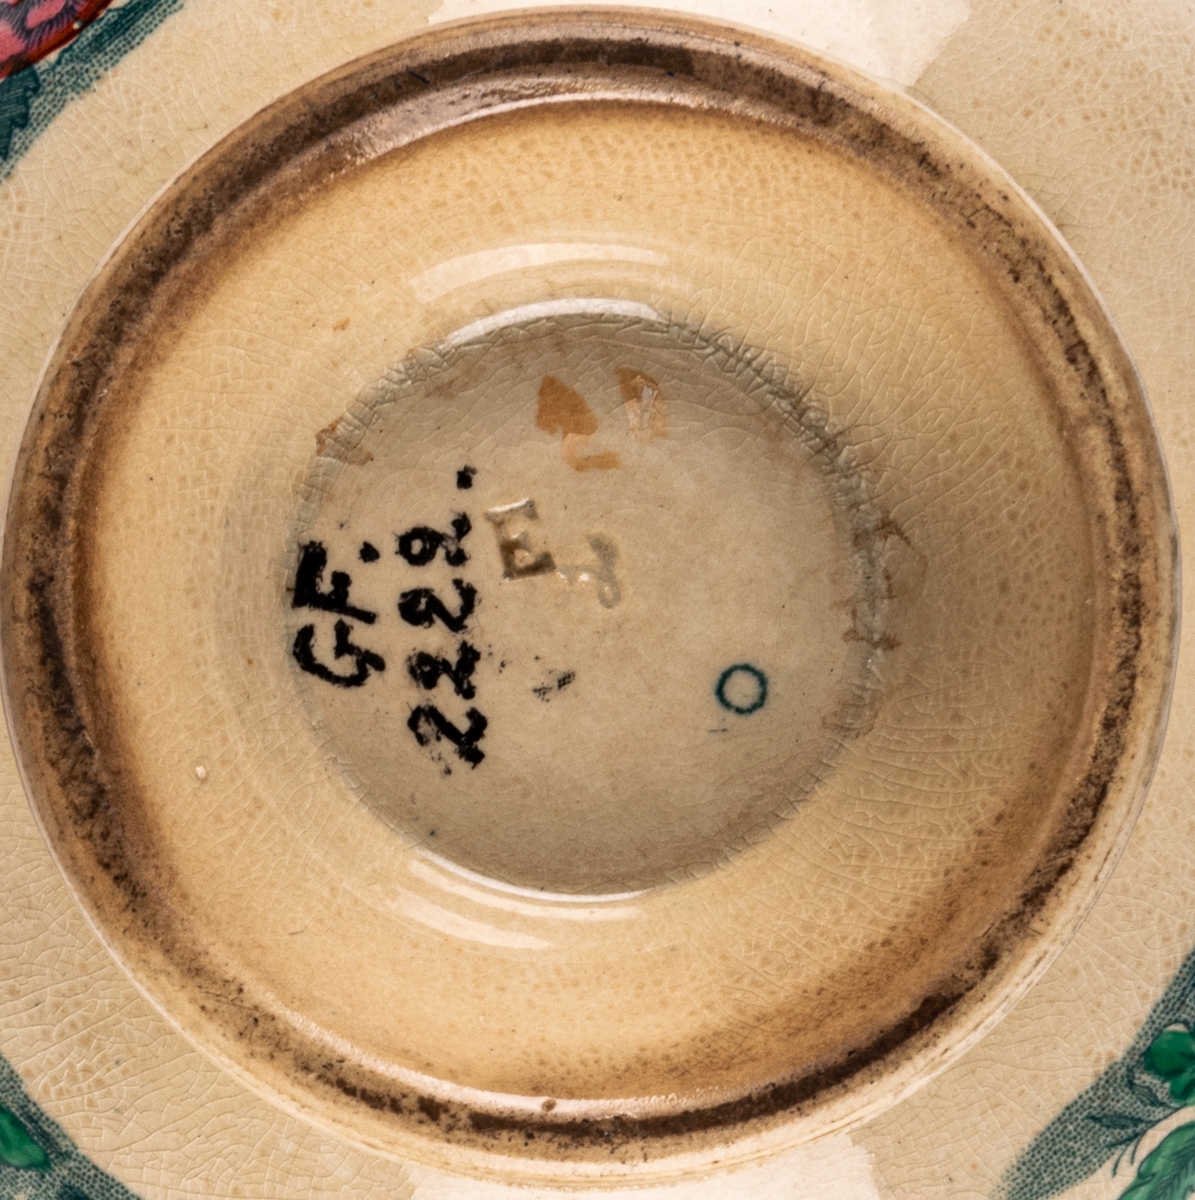 Spillkum, porslin, dekor med kinesiska motiv. Vit med bårder och blommor samt figurscenerier (schablon) i blått, grönt, rött och guld. Stämpel i godset liknande "E 1".